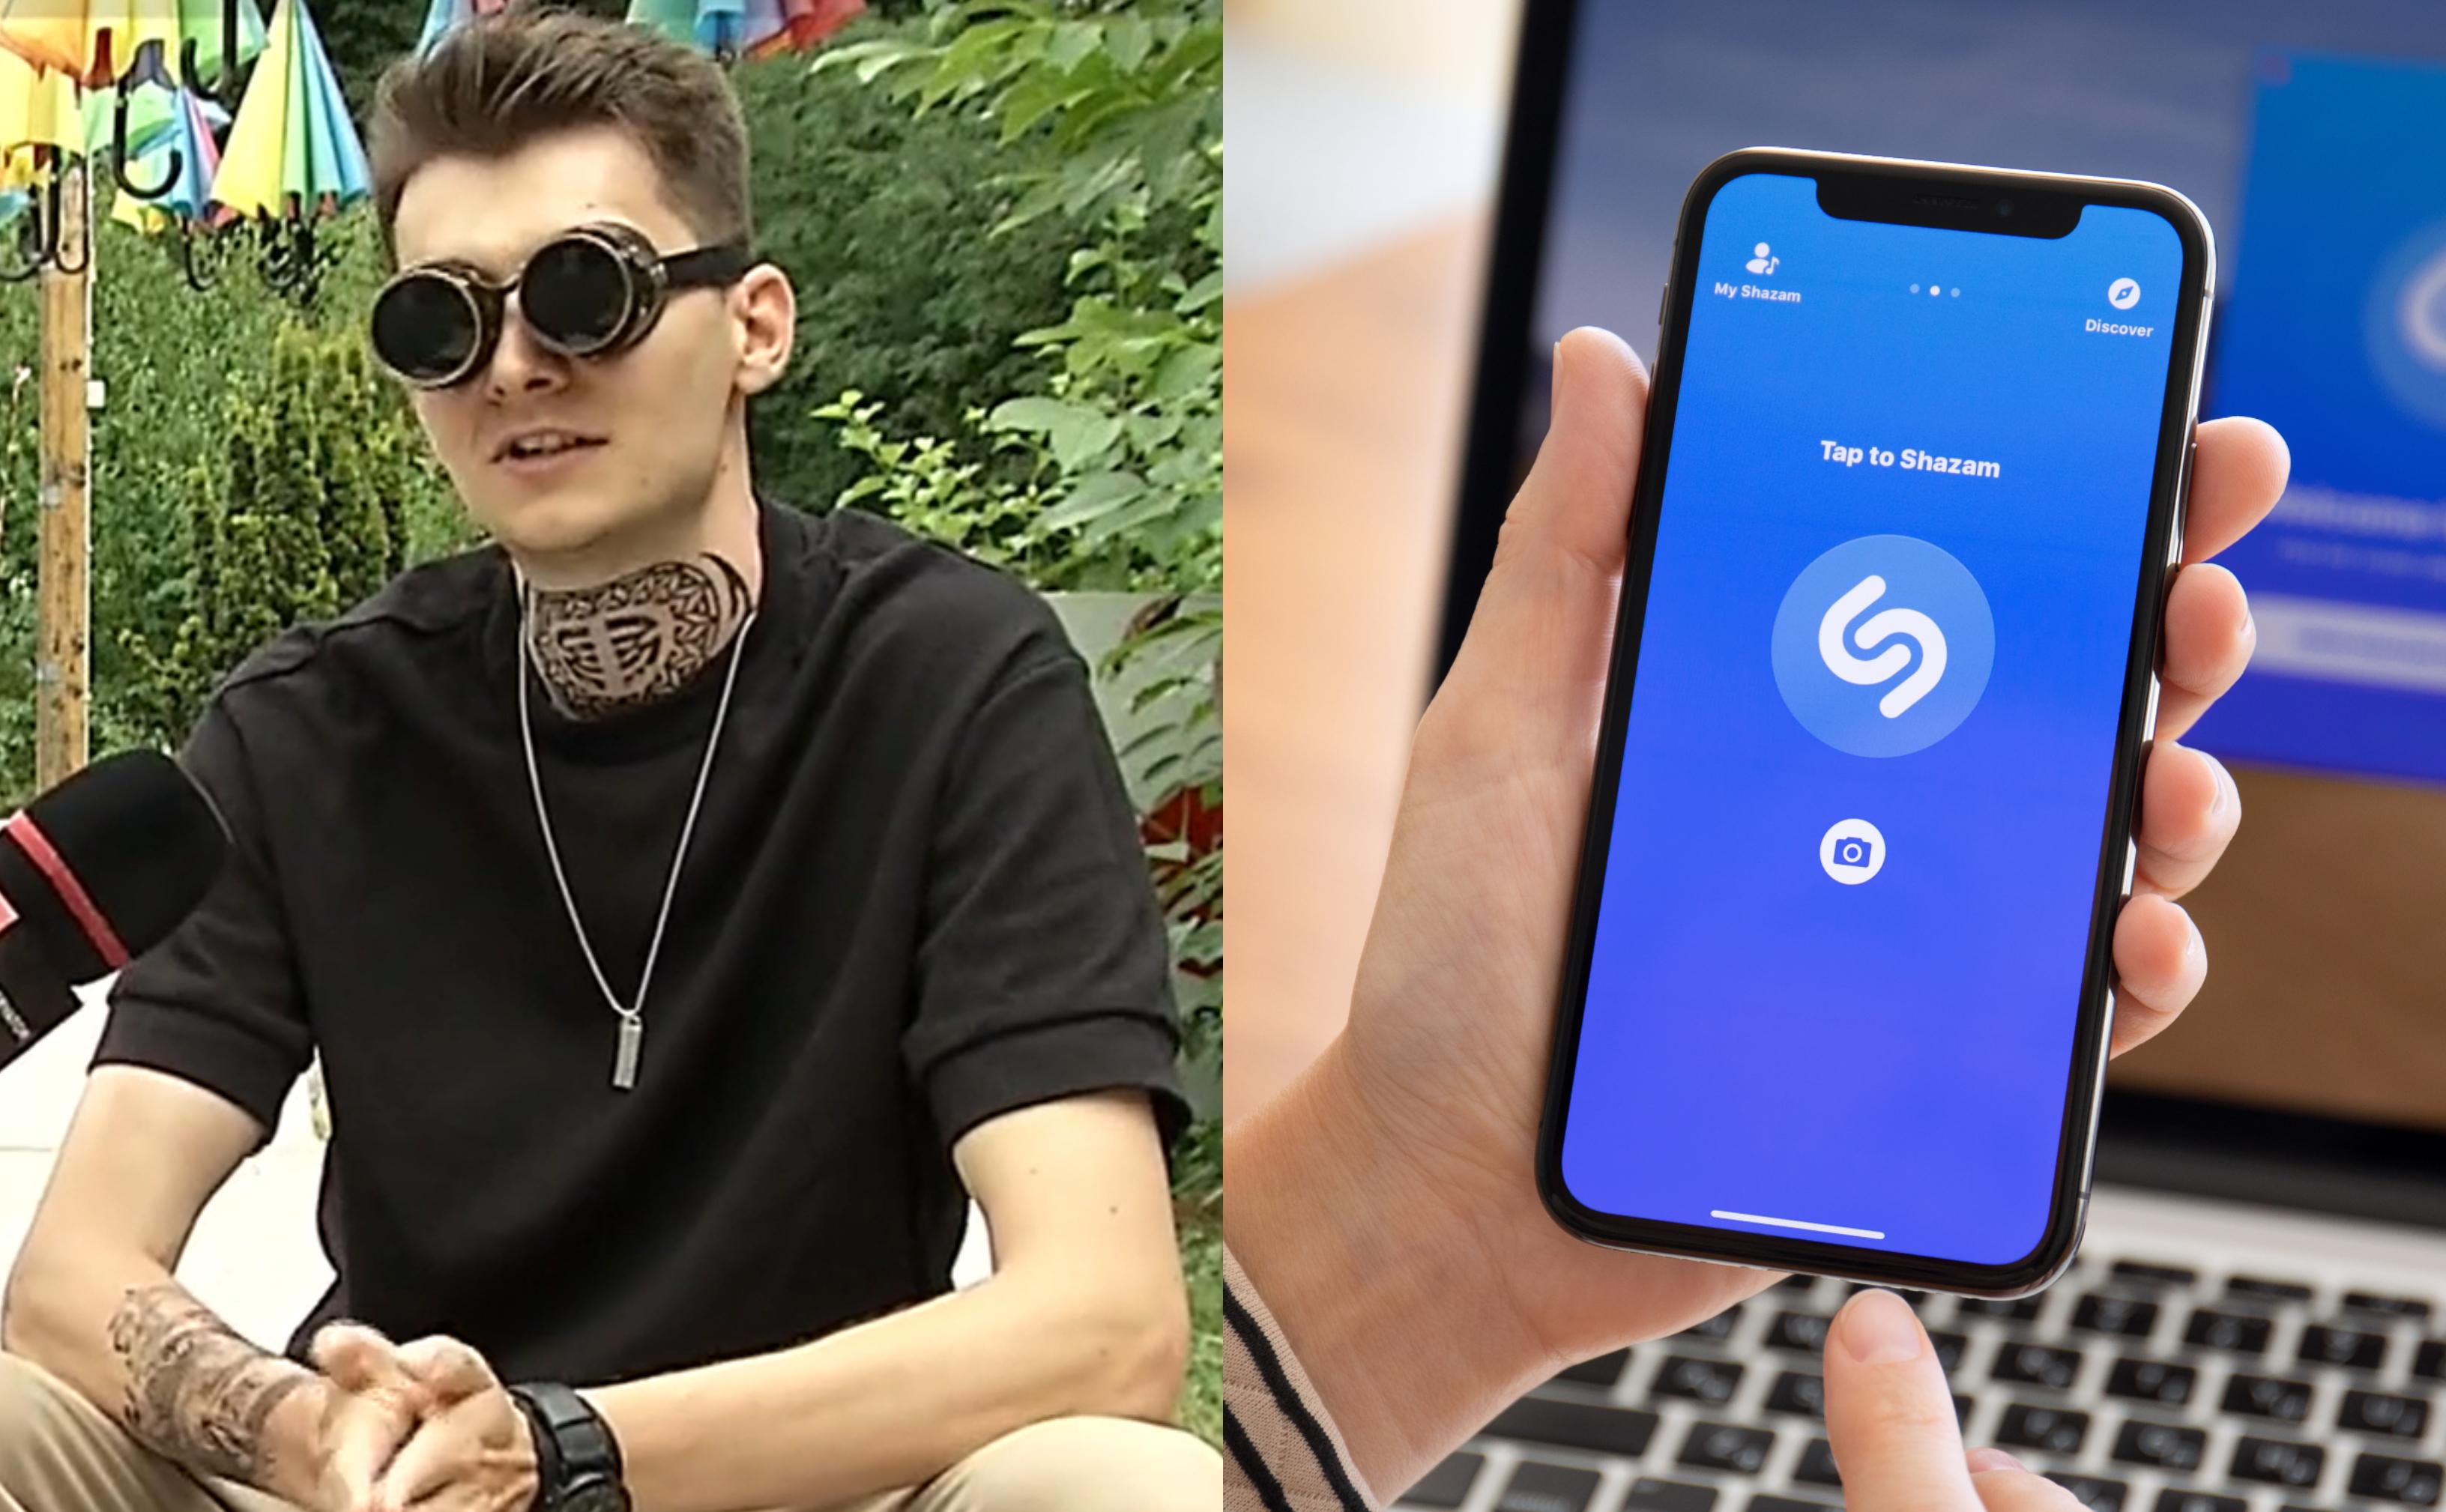 Cine este DJ Qodës, românul care a creat cea mai căutată piesă pe Shazam. Cum sună melodia, care face furori printre români